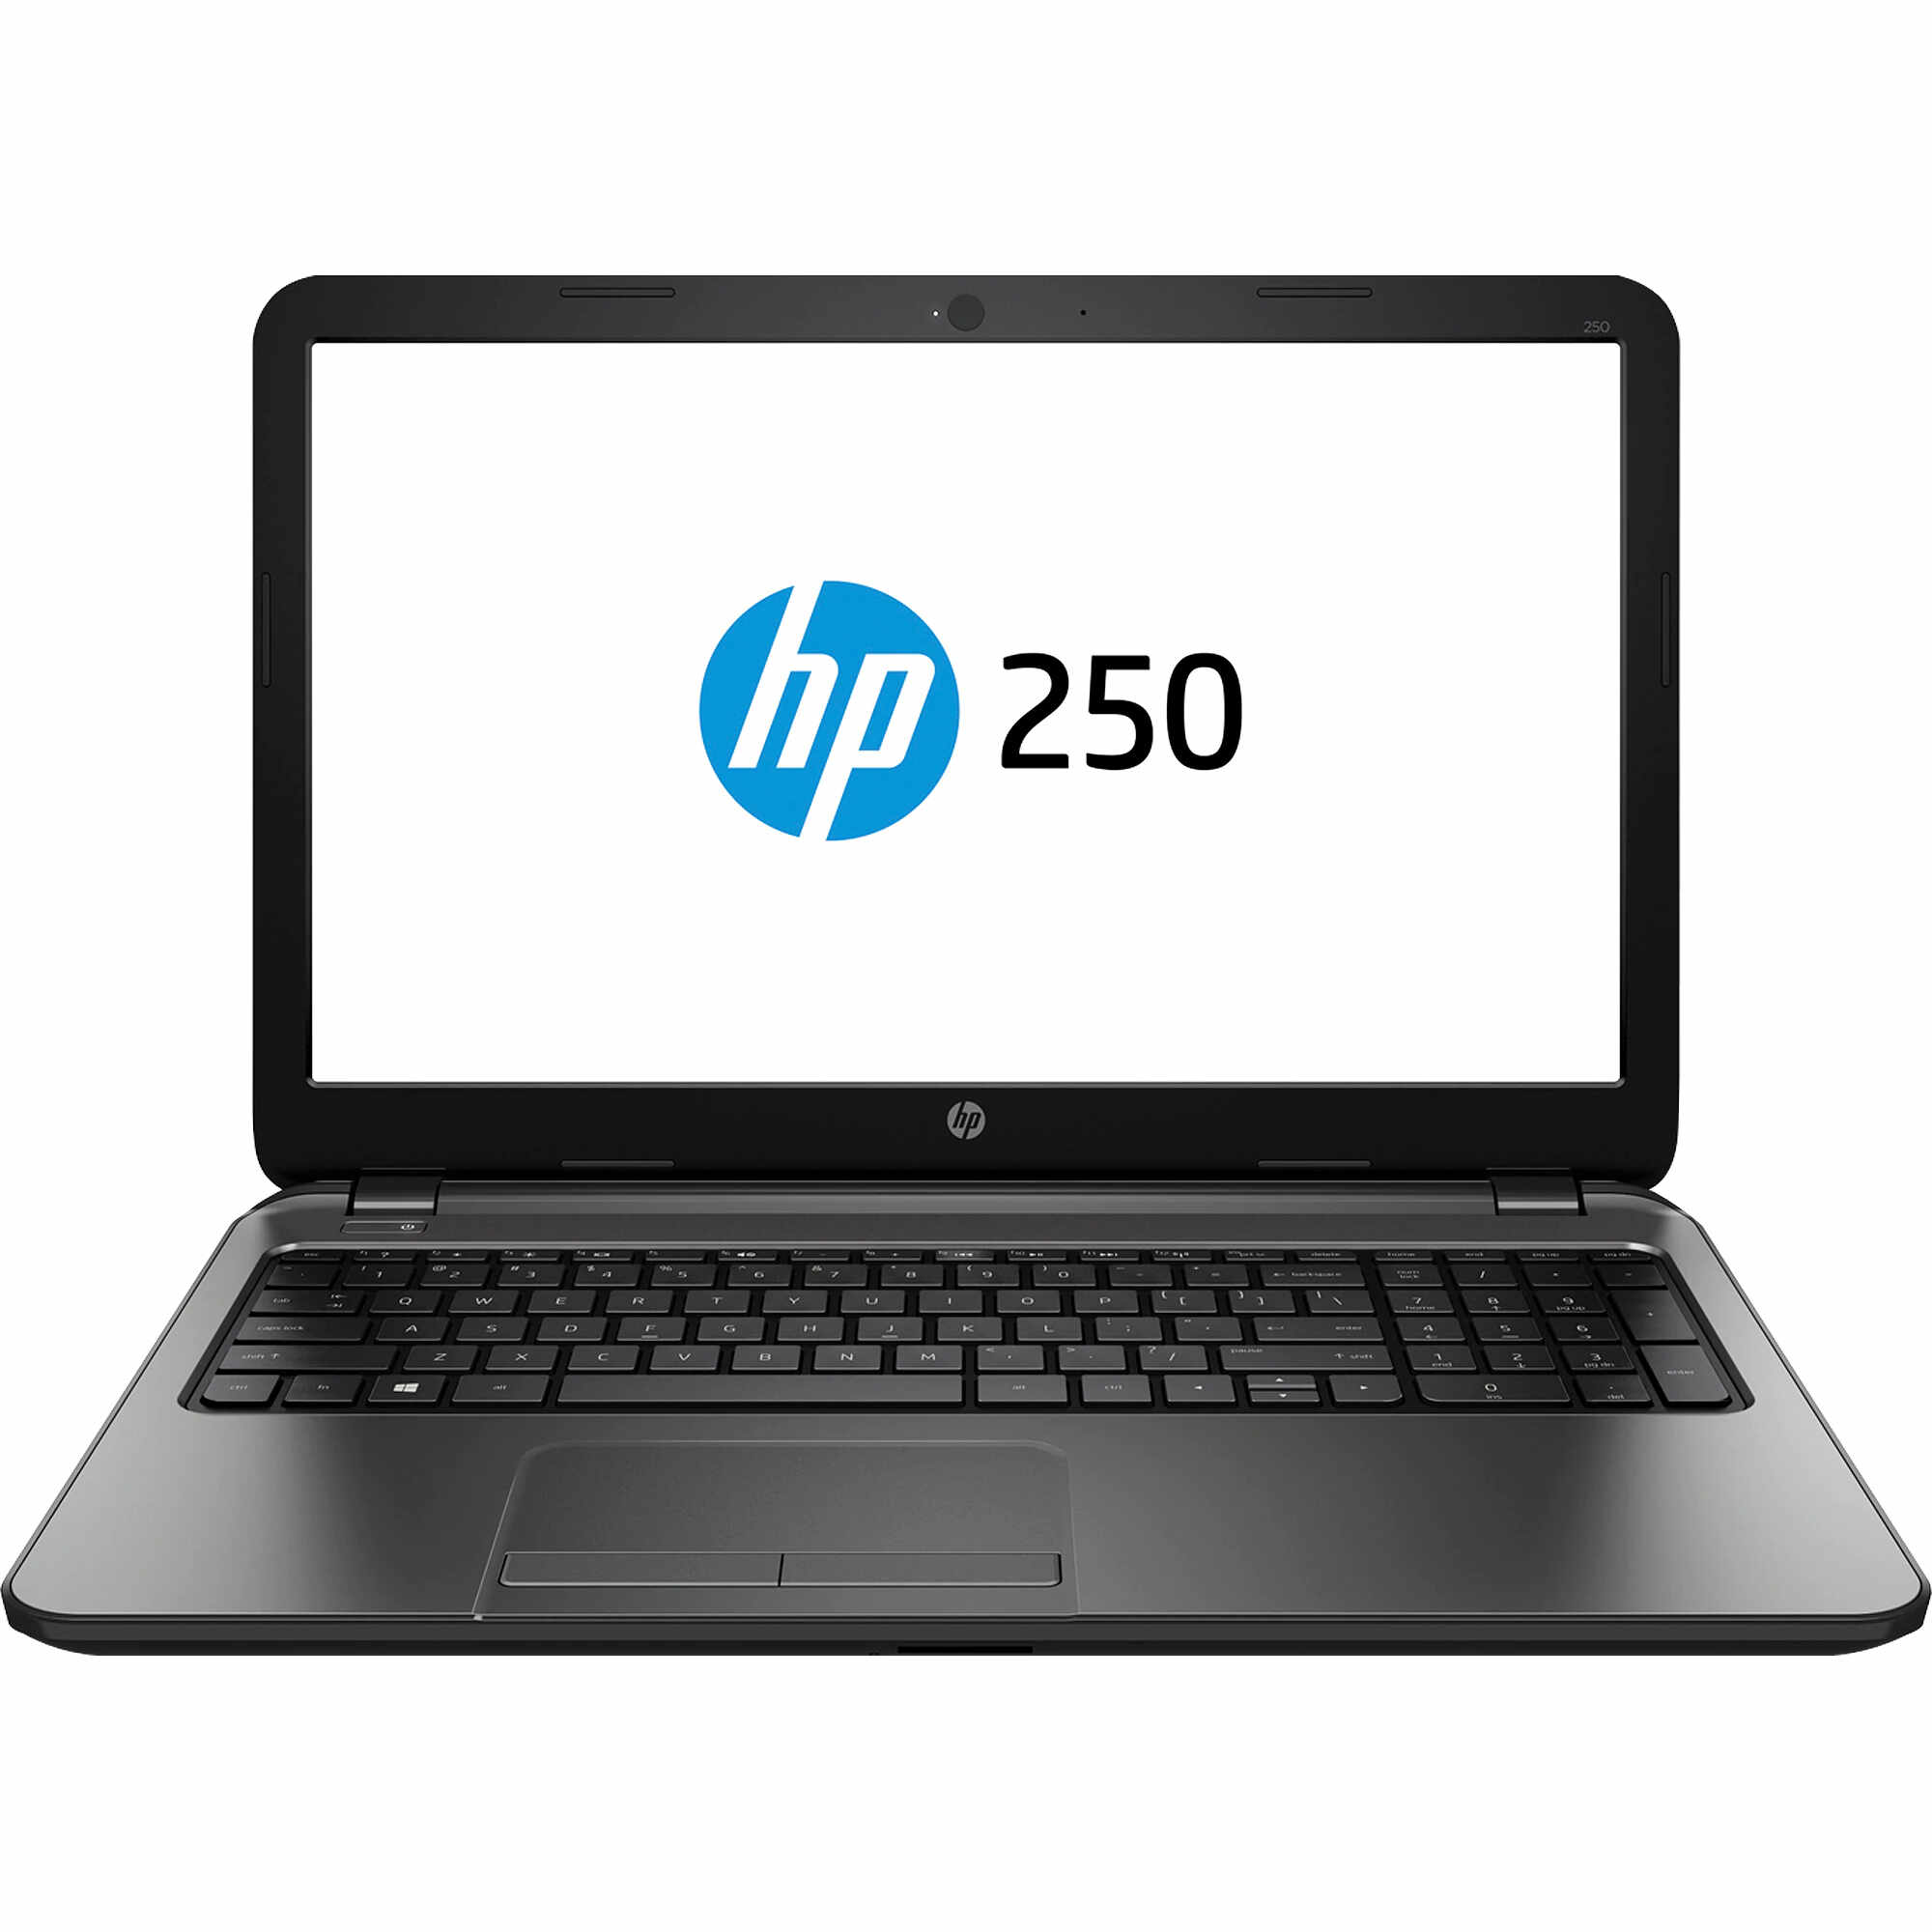 Laptop HP 250 G2, Intel Core i3-3110M 2.40GHz, 4GB DDR3, 500GB SATA, DVD-RW, 15.6 Inch, Webcam